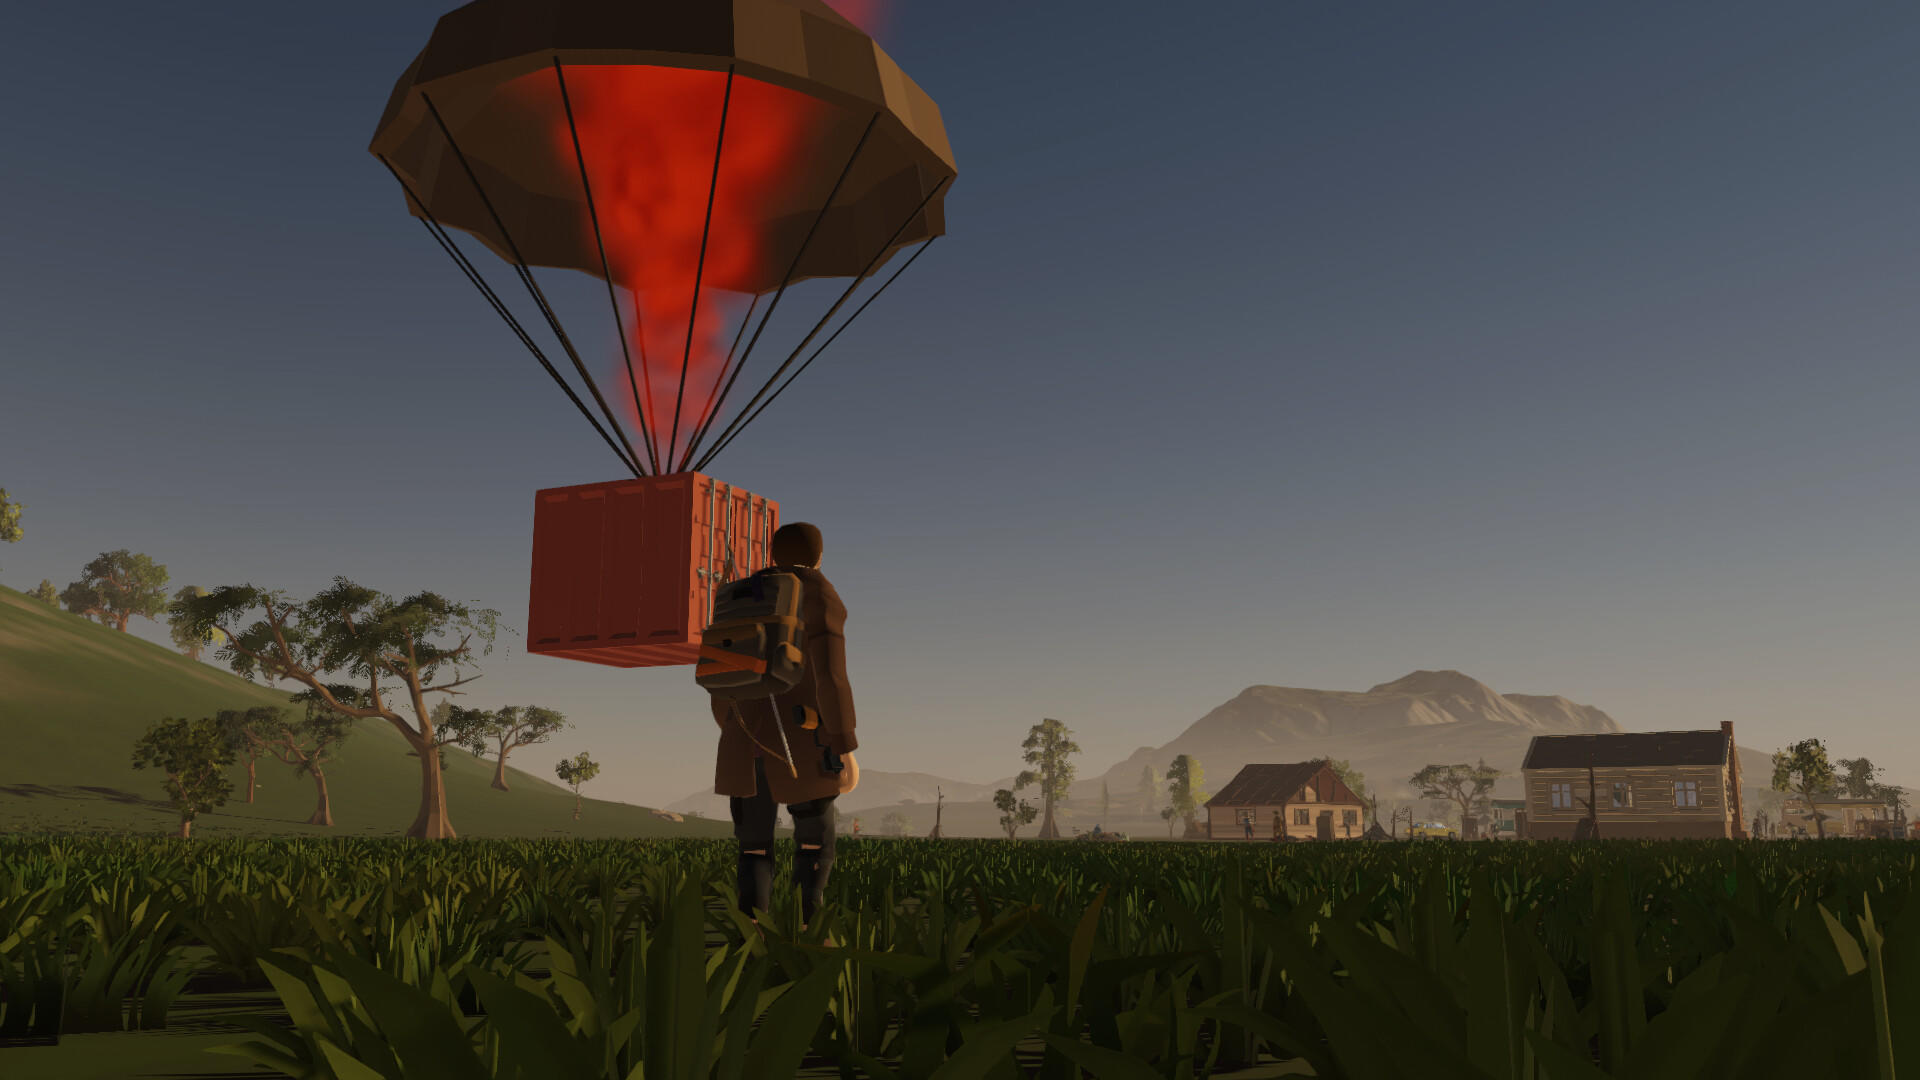 Taora : Beginning screenshot game